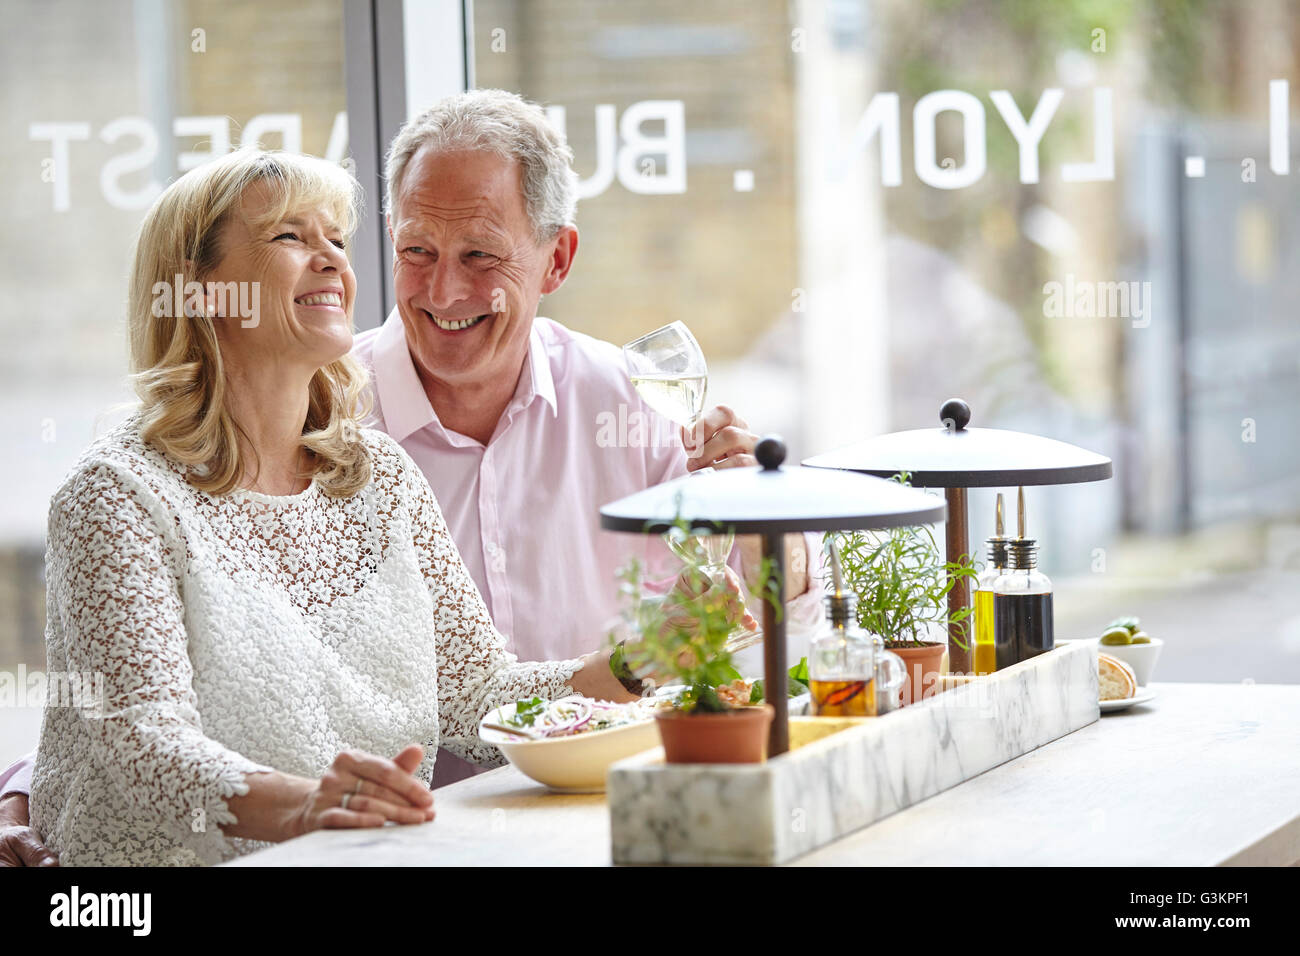 Mature dating libre à déjeuner au restaurant, London, UK Banque D'Images